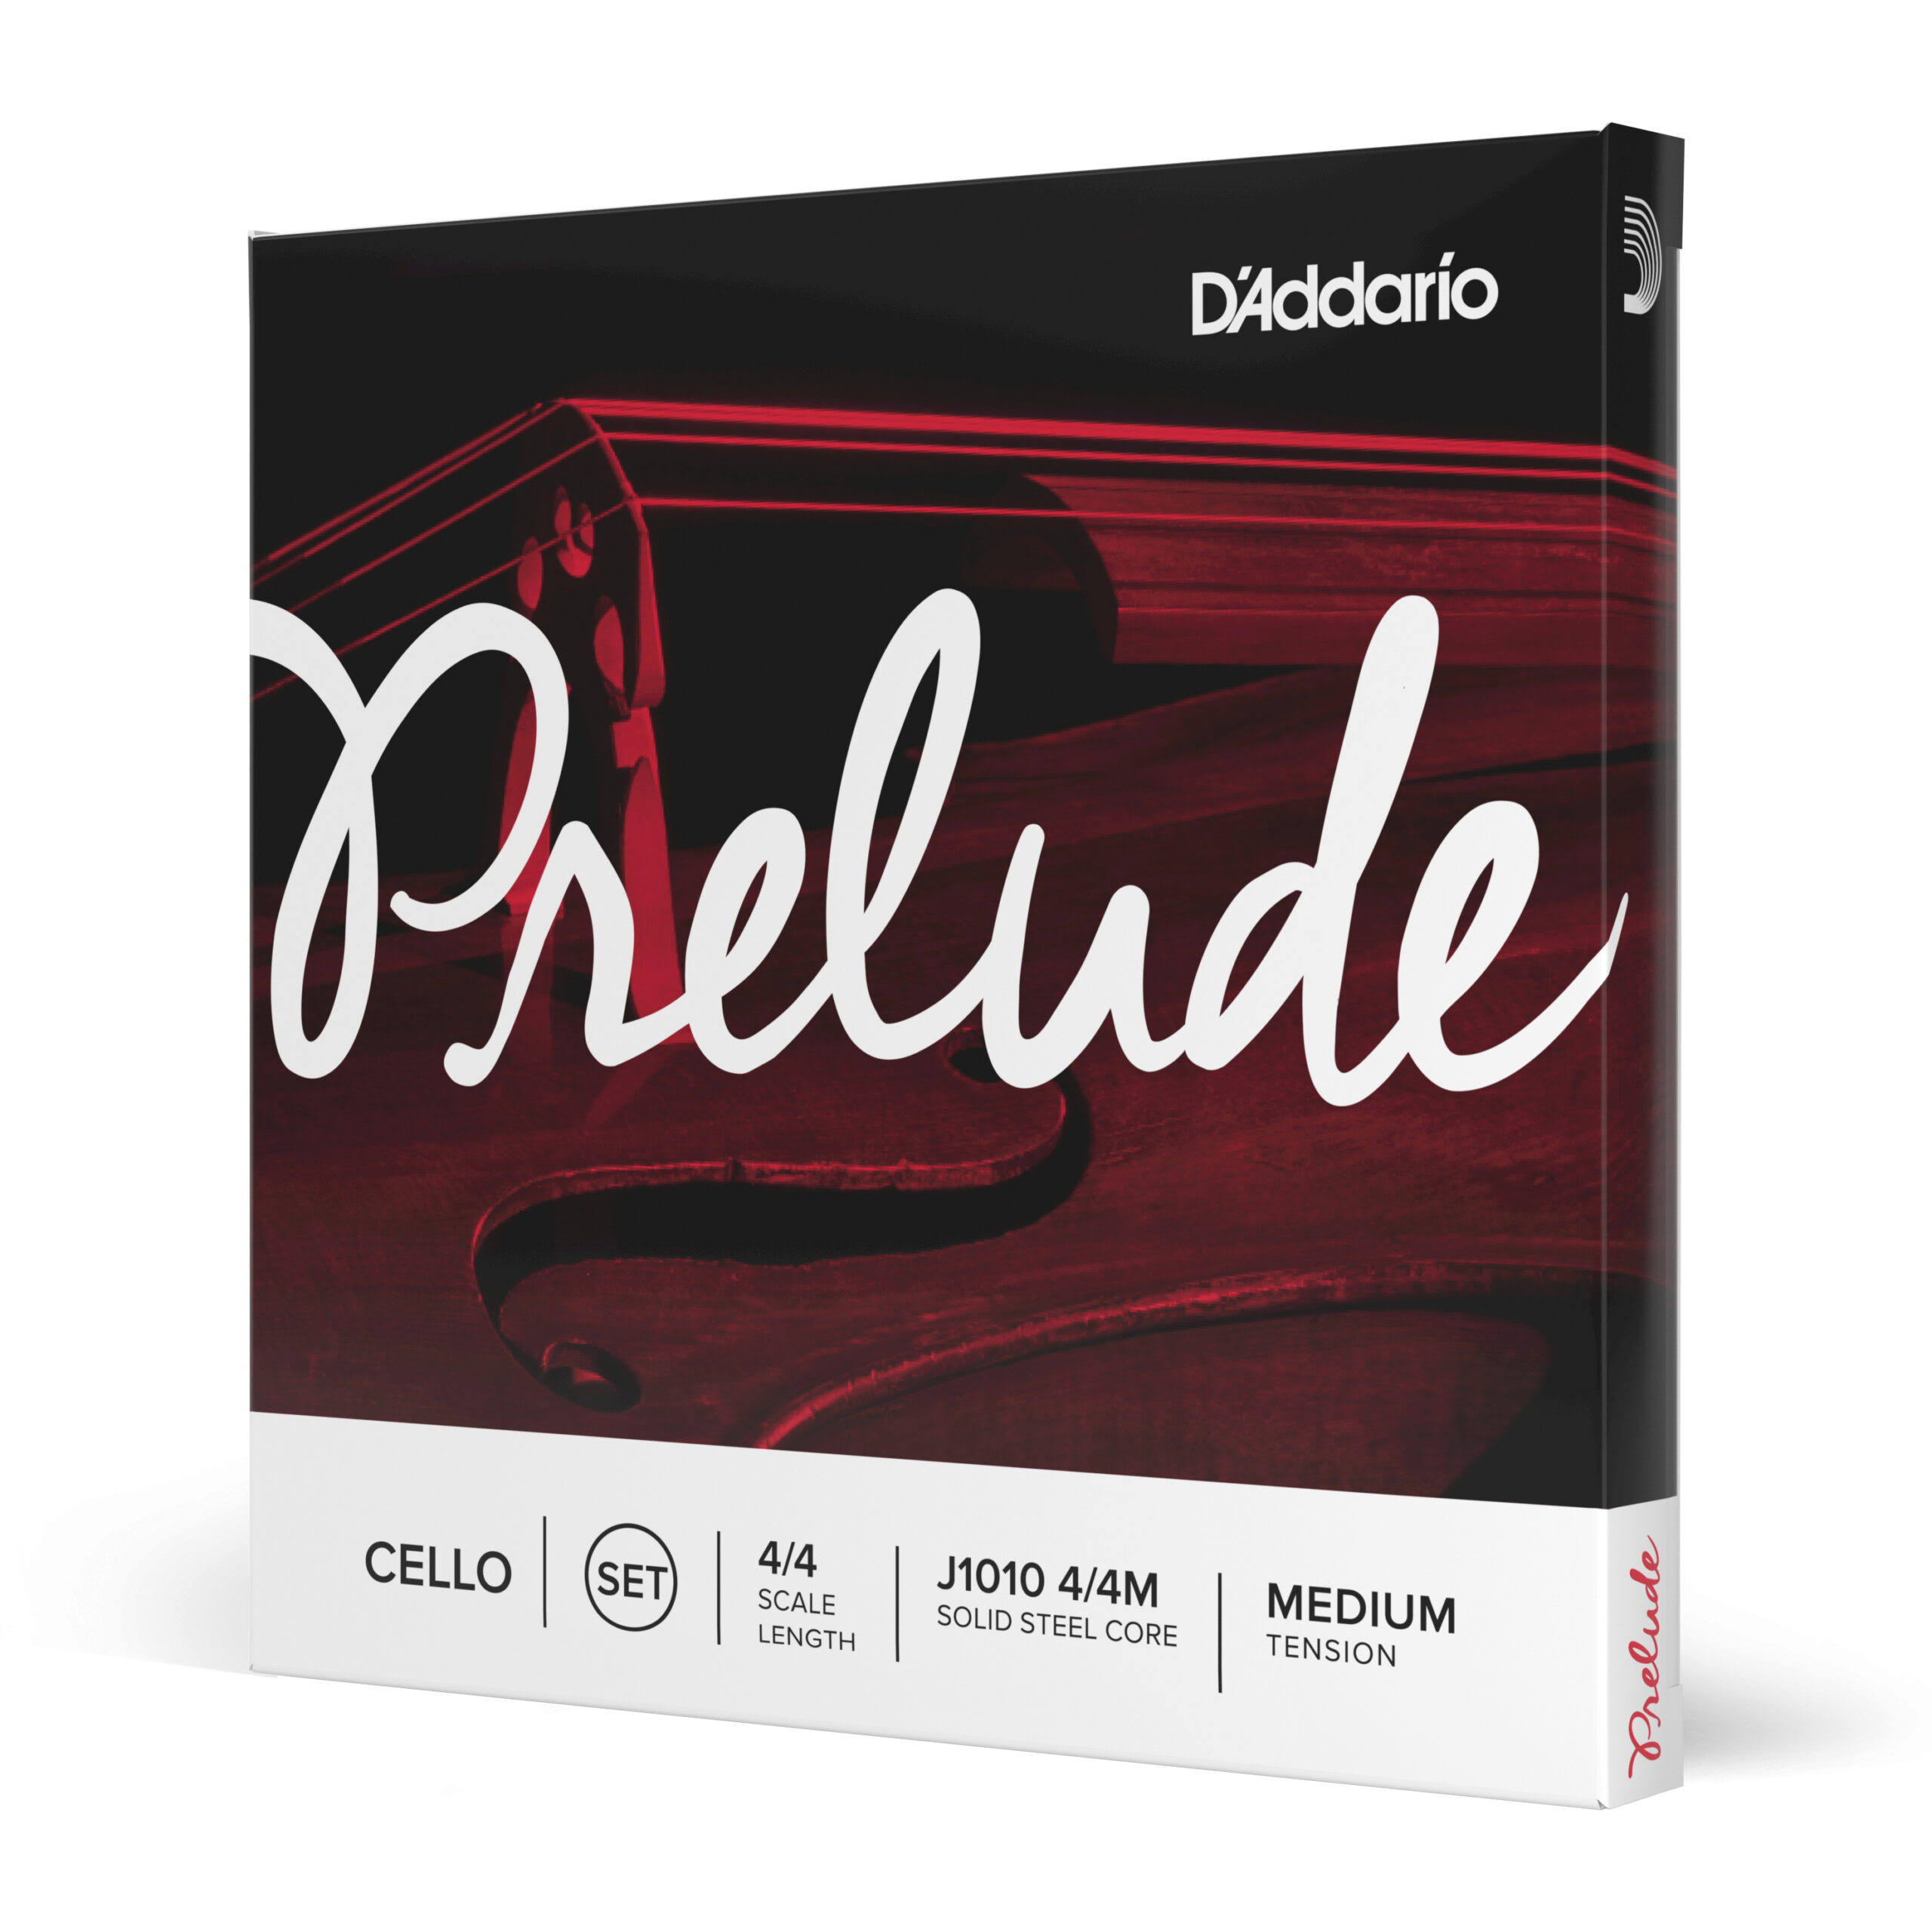 D'Addario Prelude Cello String Medium Tension - Set, 4 x 4 Size